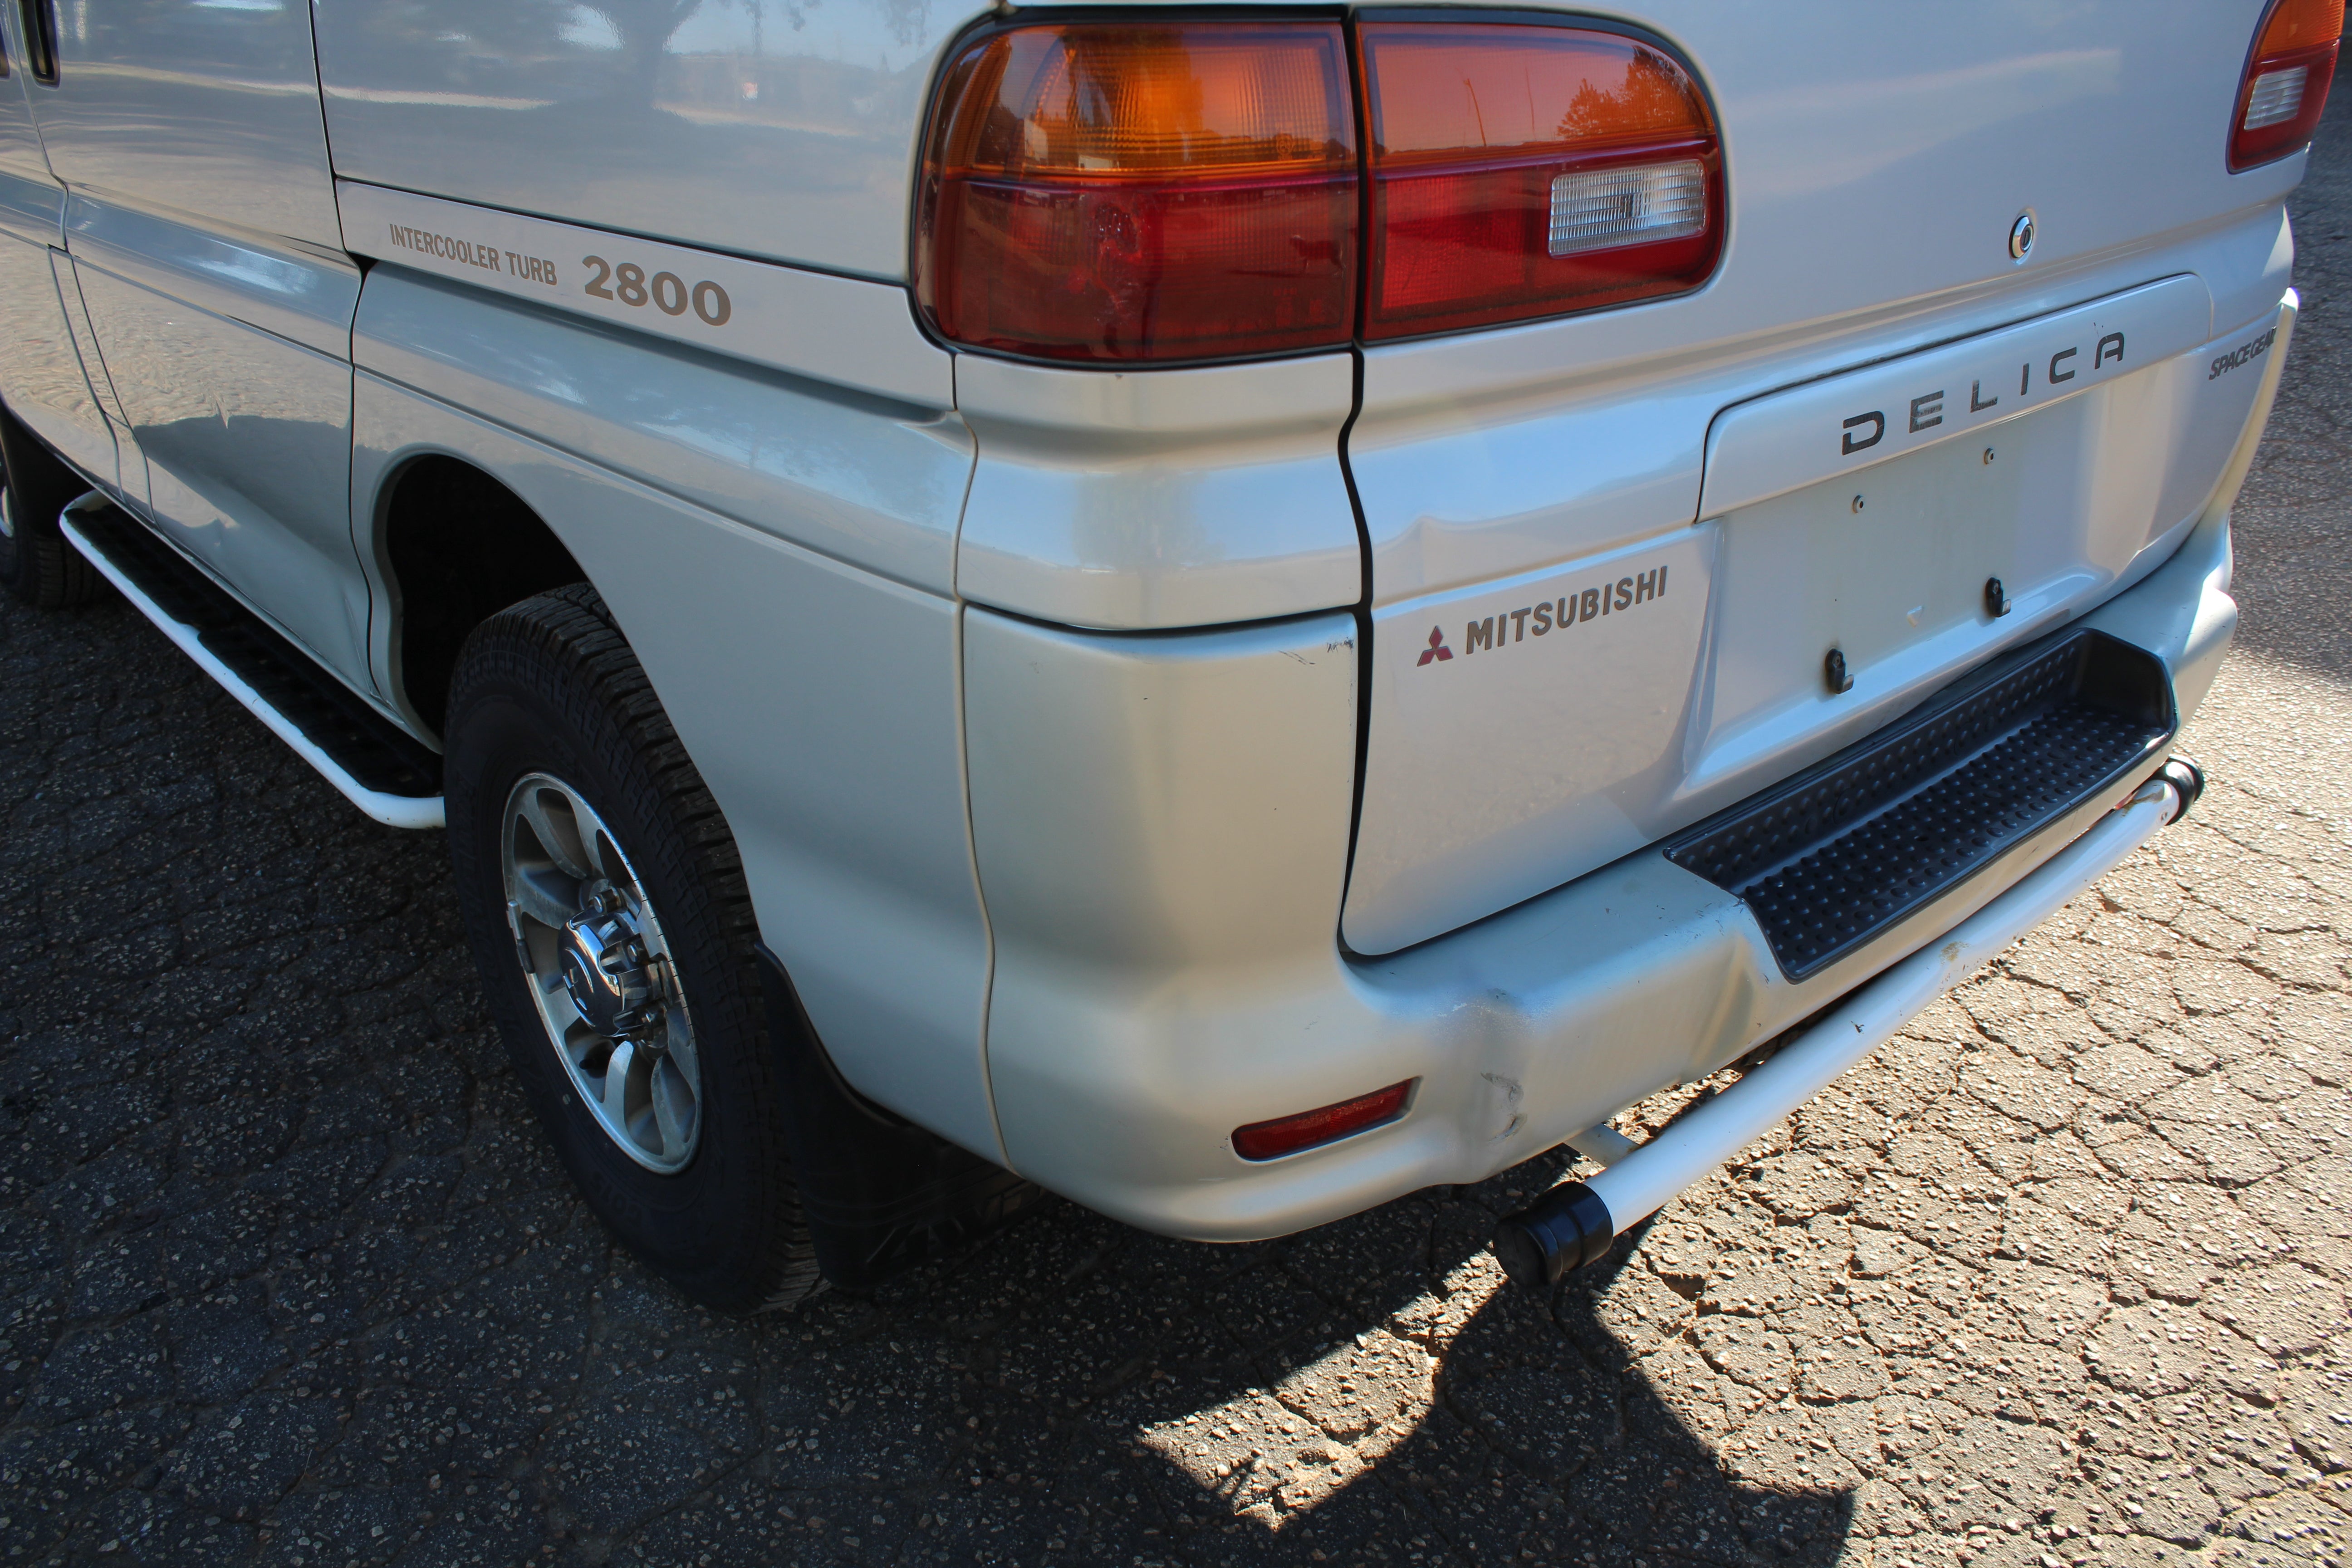 JDM 96 Mitsubishi Delica Space Gear 4x4 Turbo Diesel Van Pending Sale